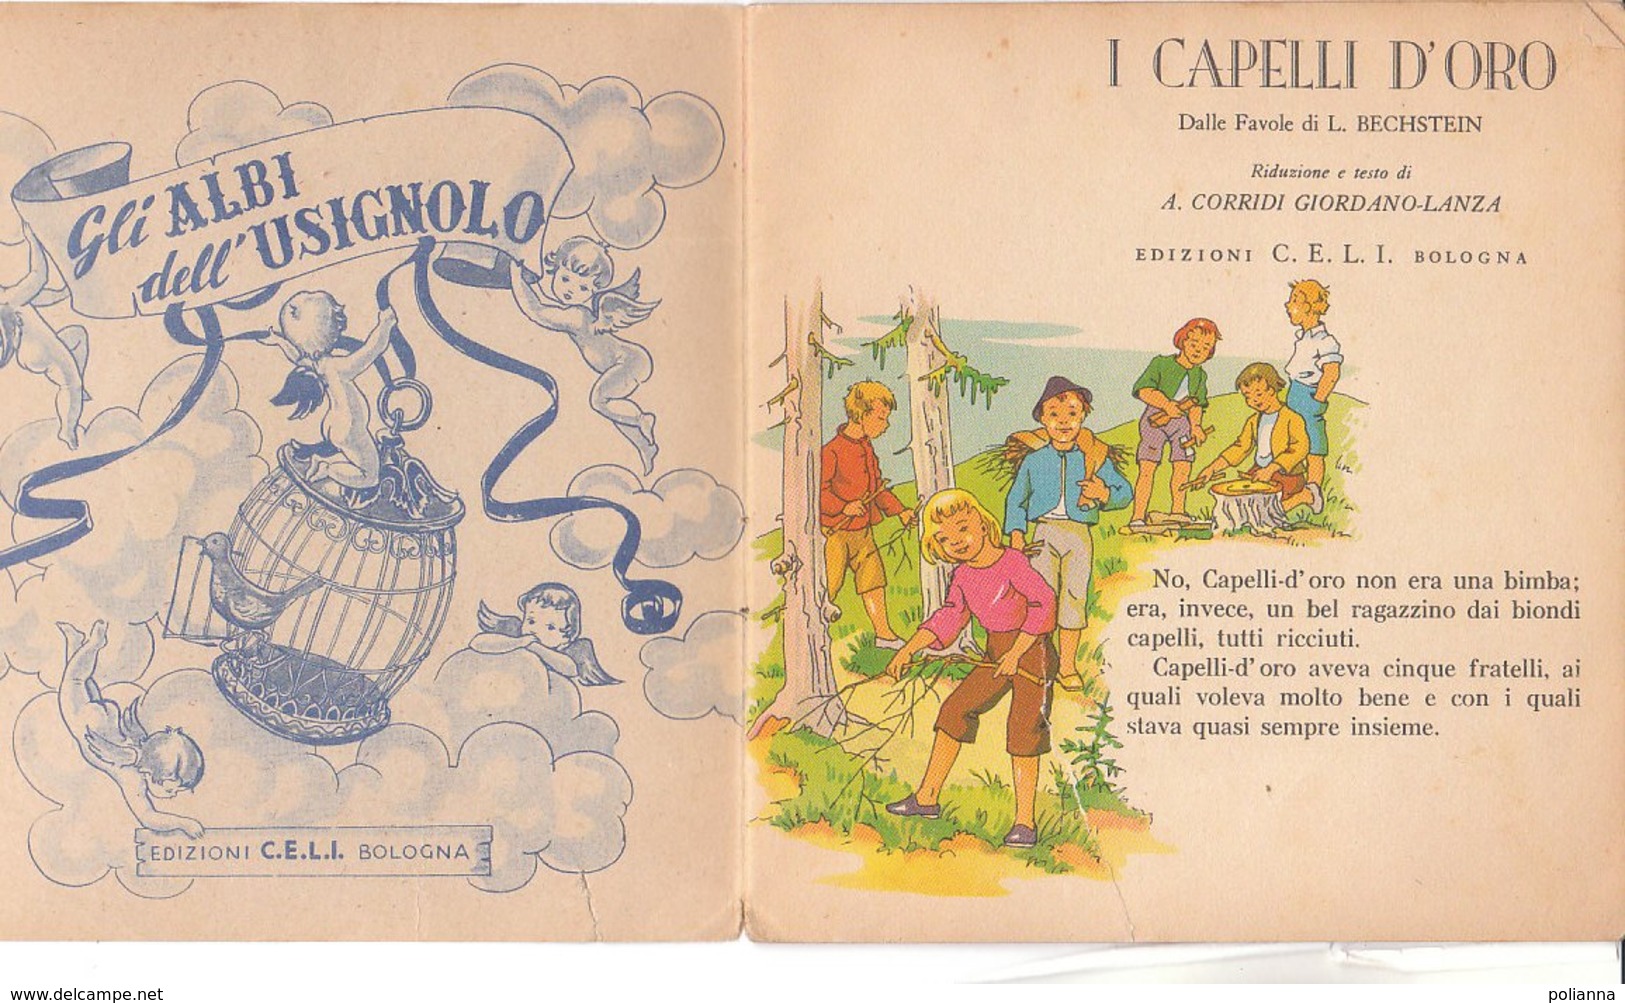 M#0V70 Albo Illustrato Collana Dell'Usignolo : Bechstein I CAPELLI D'ORO Ed. C.E.L.I.anni '50 - Old